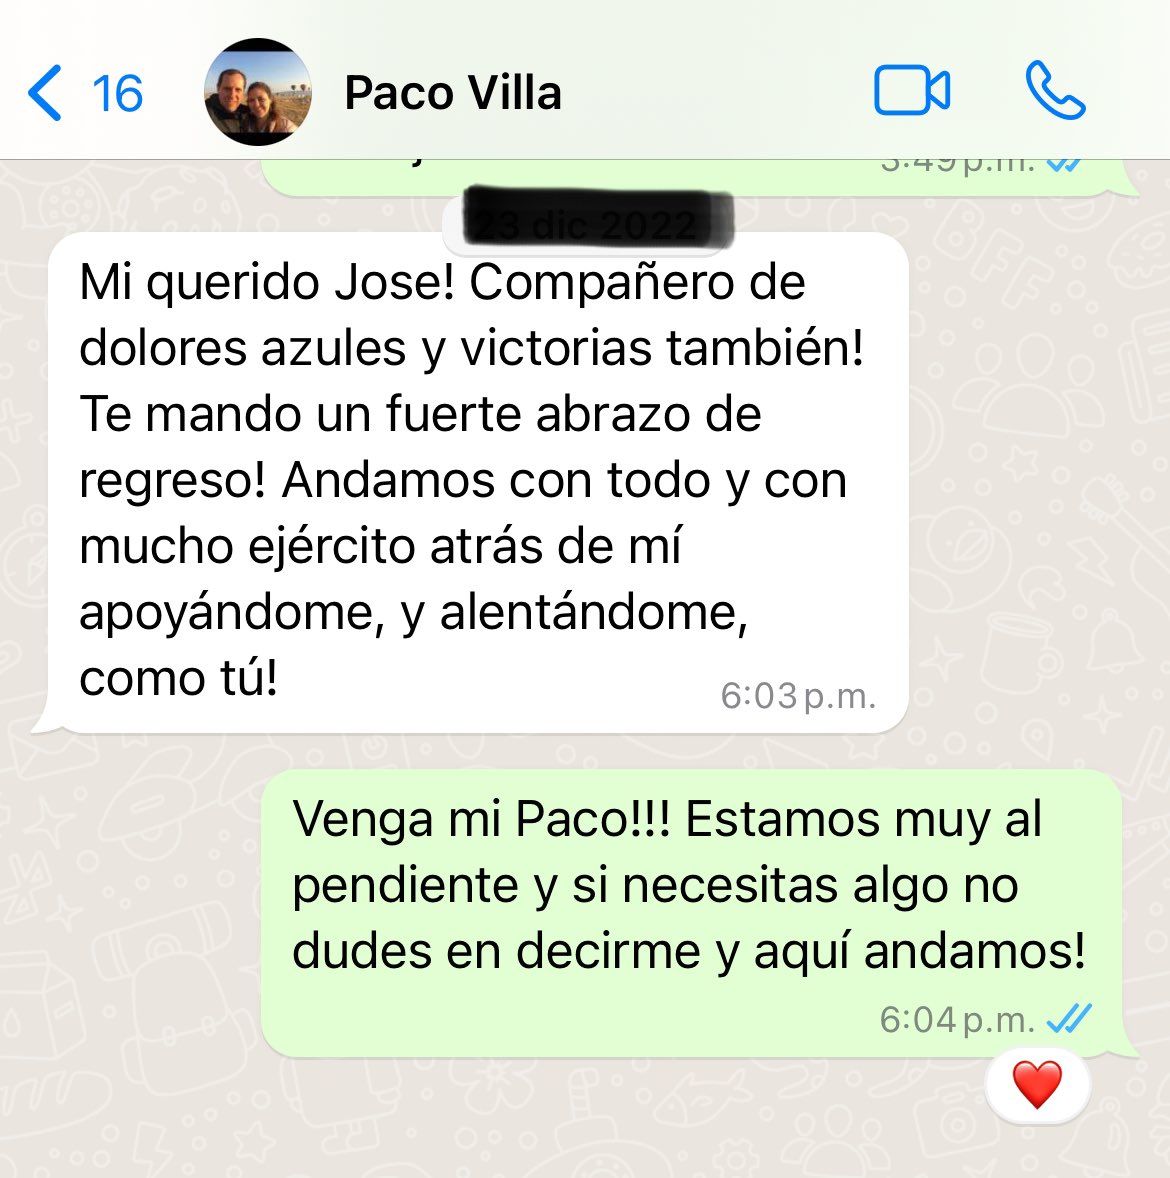 Este fue el último mensaje que recibí en WhatsApp de mi querido @Paco_Villa_ 

“Compañero de dolores azules y victorias también” Cada que nos veíamos o hablábamos, ¡algo! ¡Siempre algo! Hablábamos de la máquina. 

Hoy en especial he pensado tanto en ti! 

Que venga LA DÉCIMA! 🏆